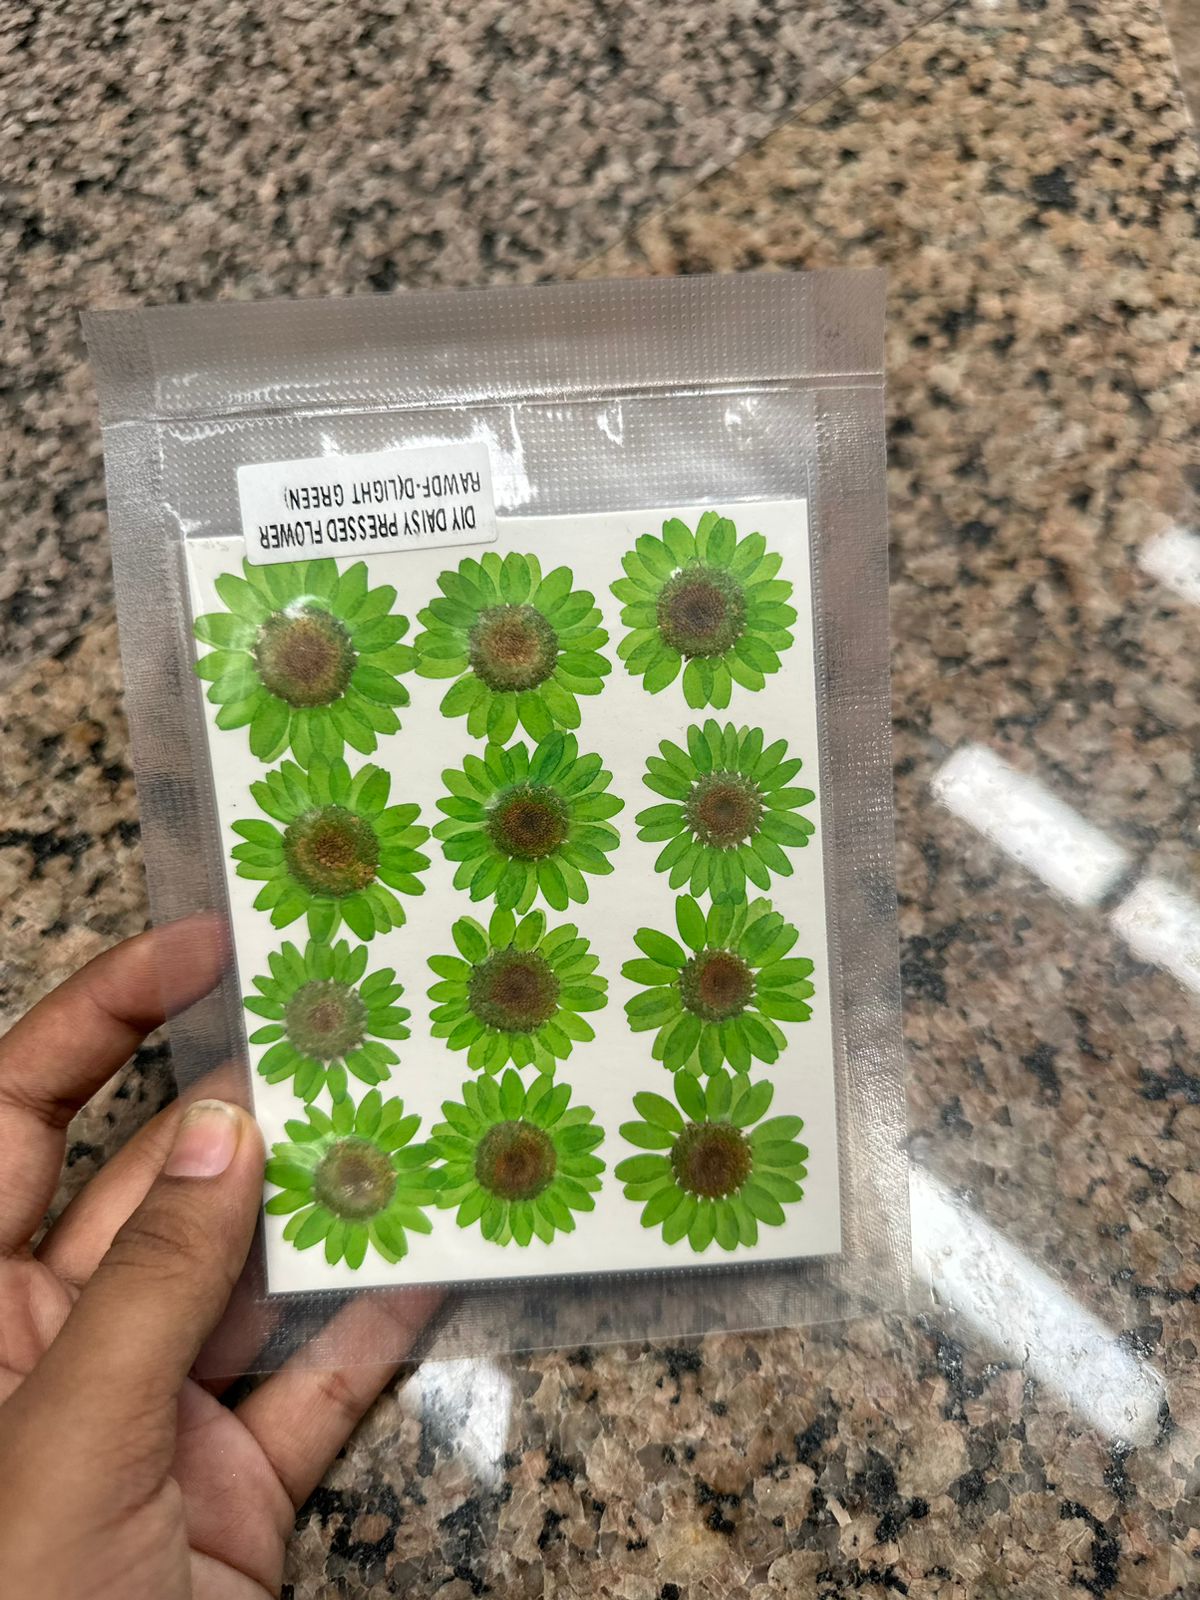 Green daisy